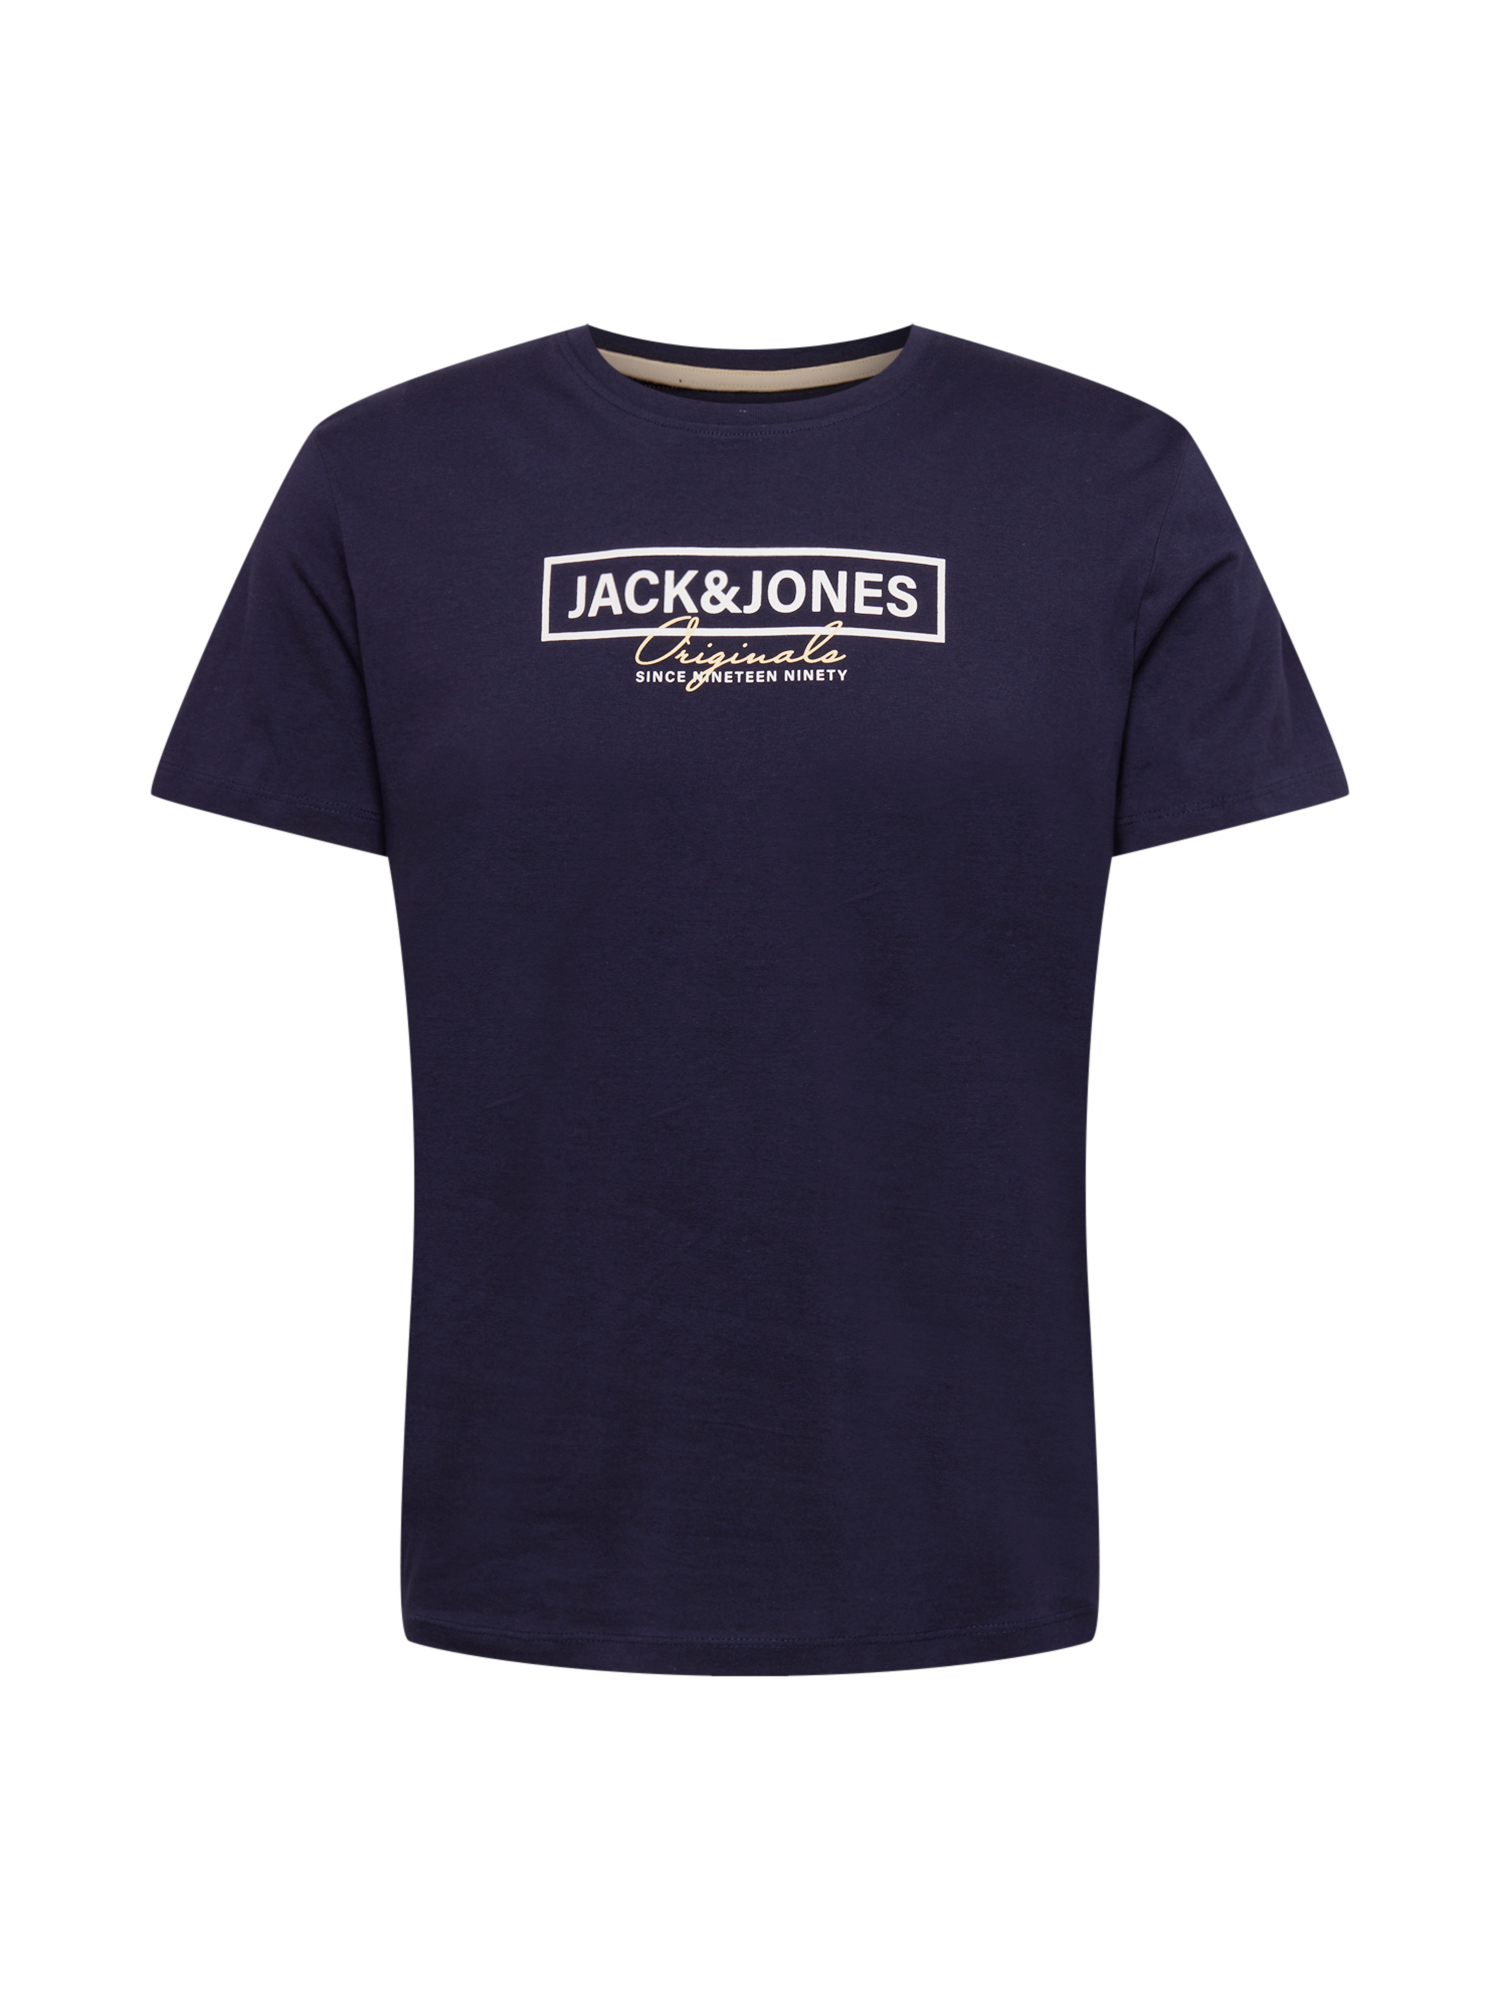 Koszulki Mężczyźni JACK & JONES Koszulka FABIAN w kolorze Granatowym 